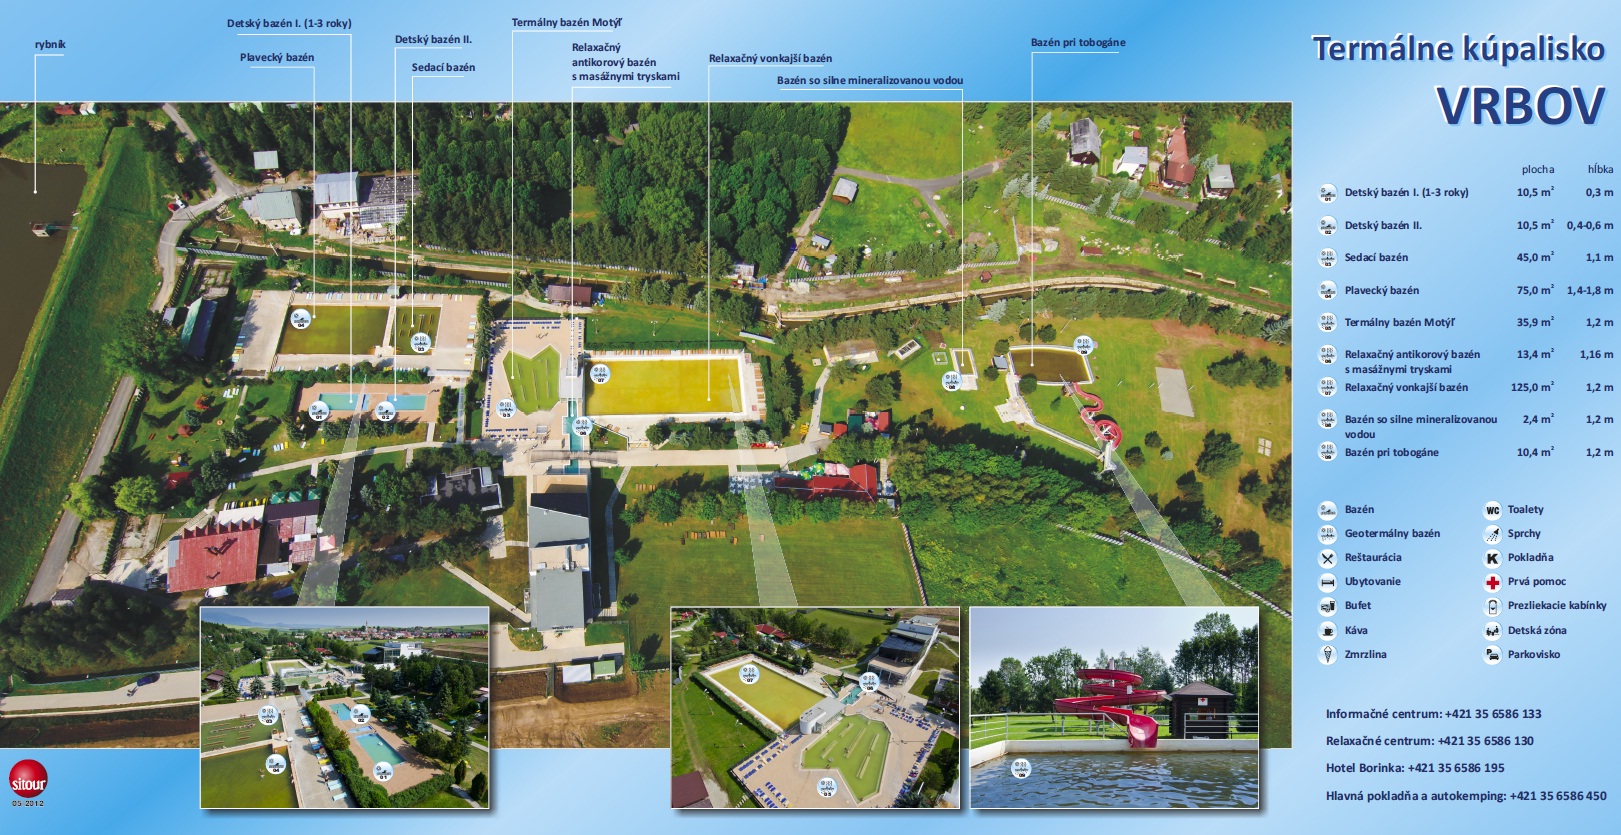 Karte - Thermal park Vrbov